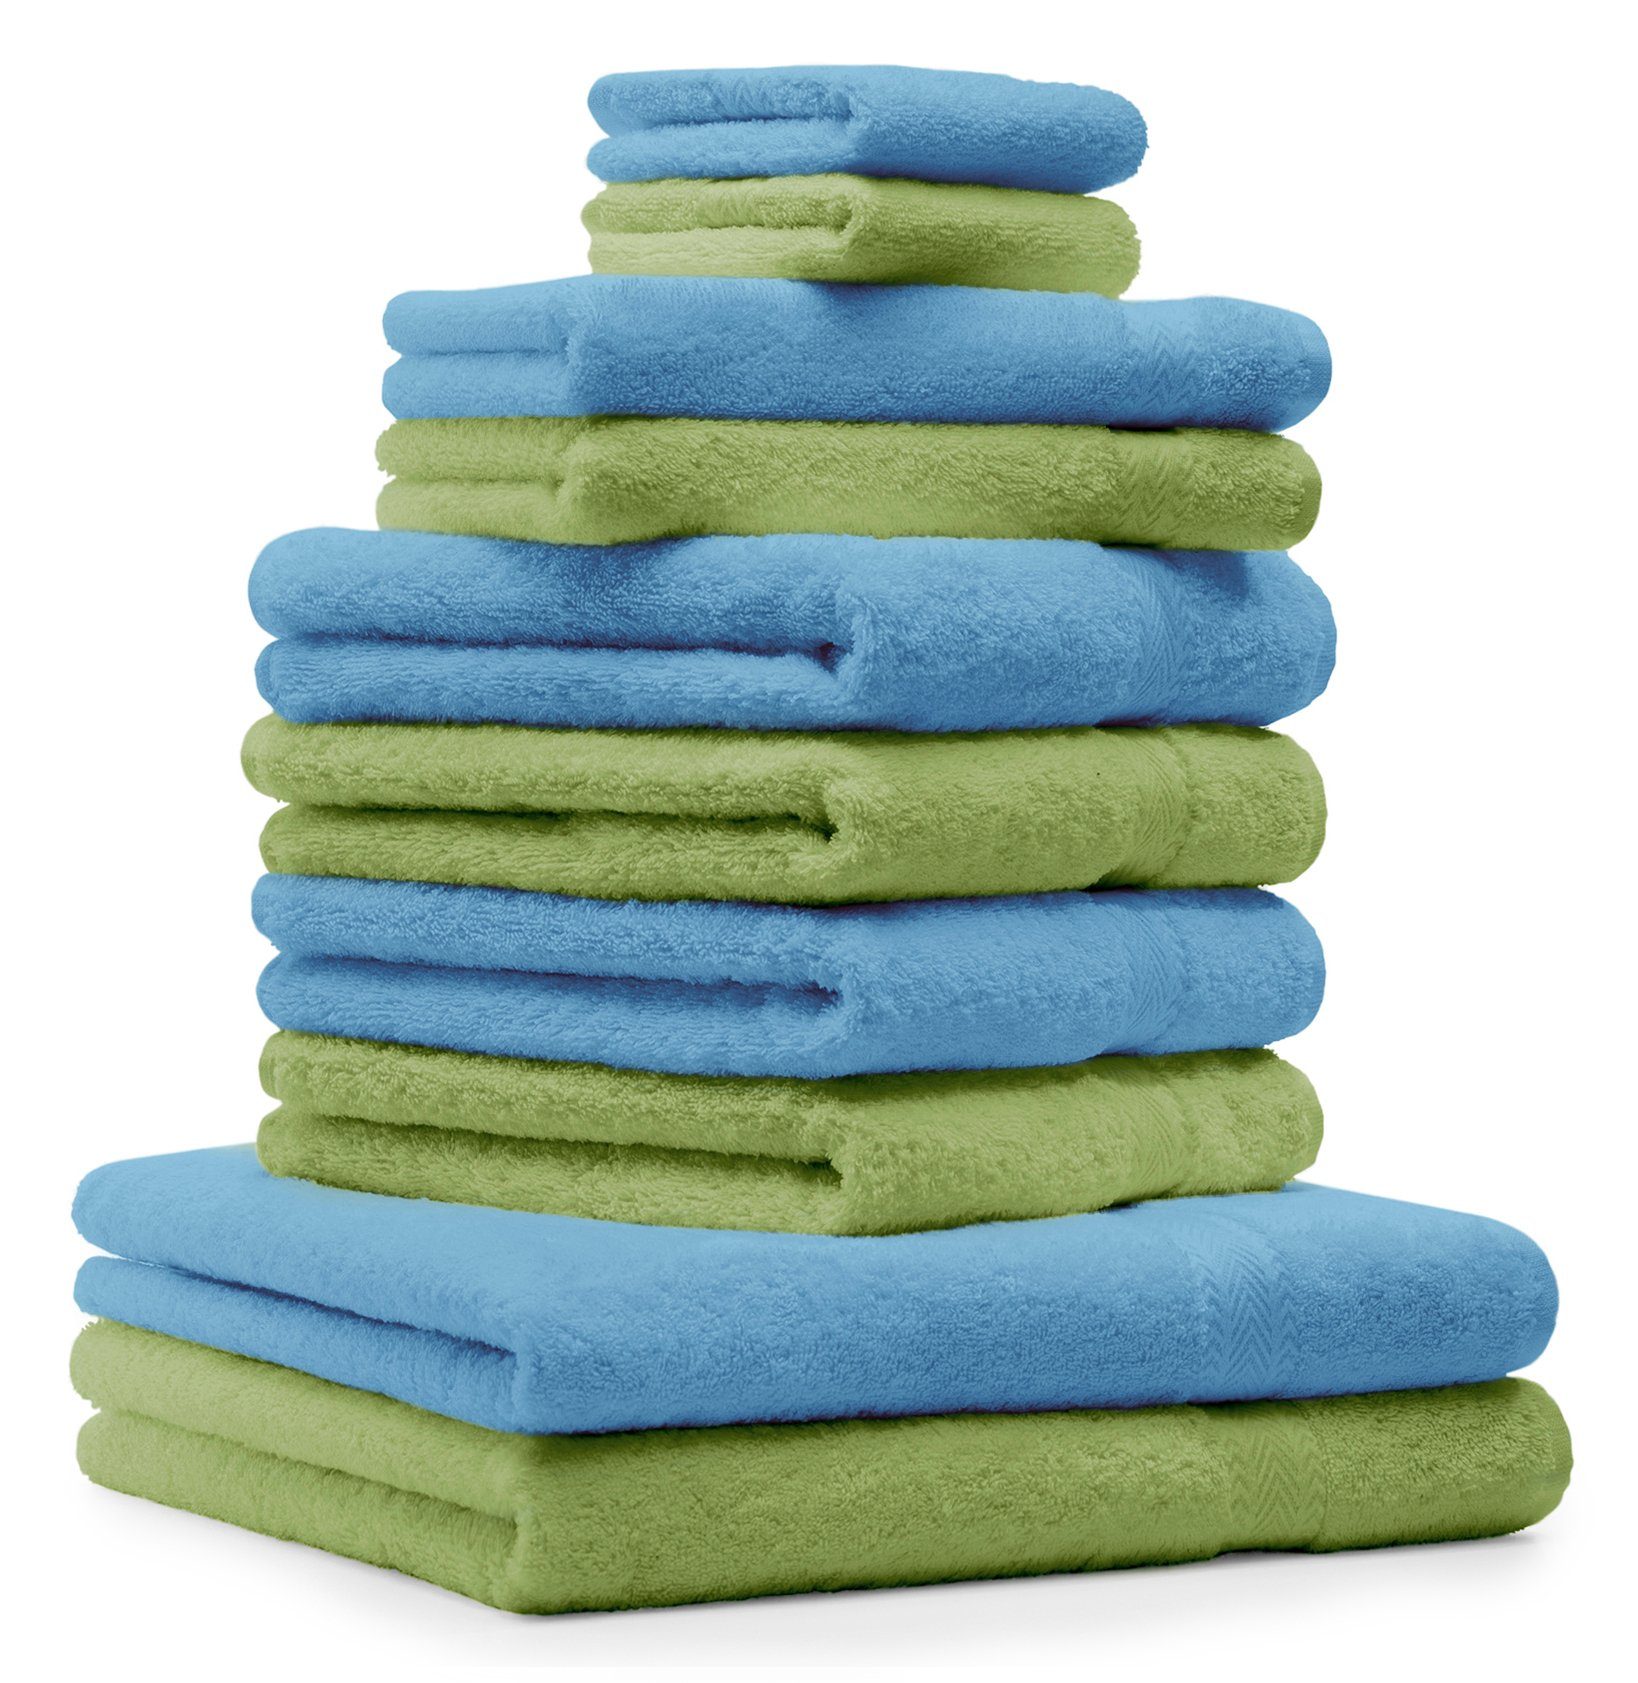 Betz Handtuch Set 10-TLG. Handtücher-Set Classic Farbe apfelgrün und hellblau, 100% Baumwolle